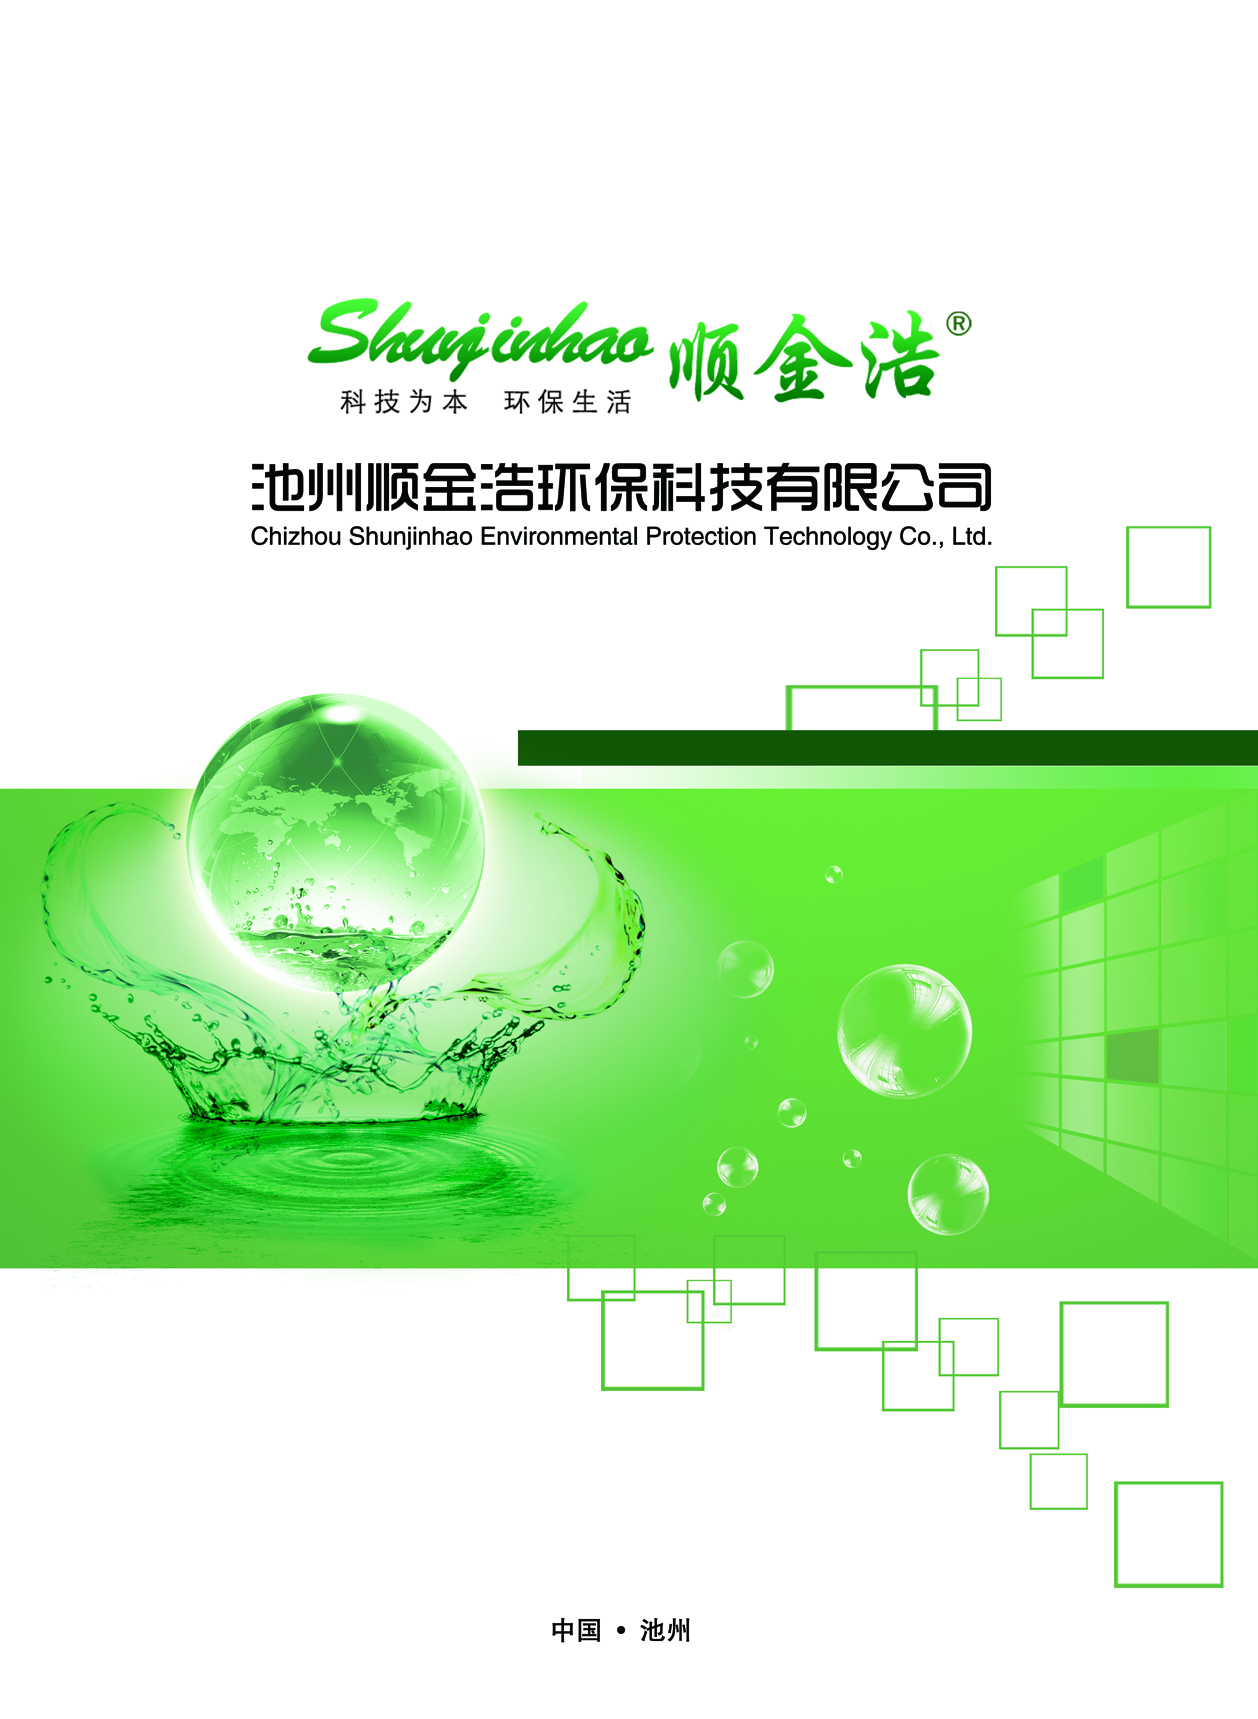 池州顺金浩环保科技有限公司logo